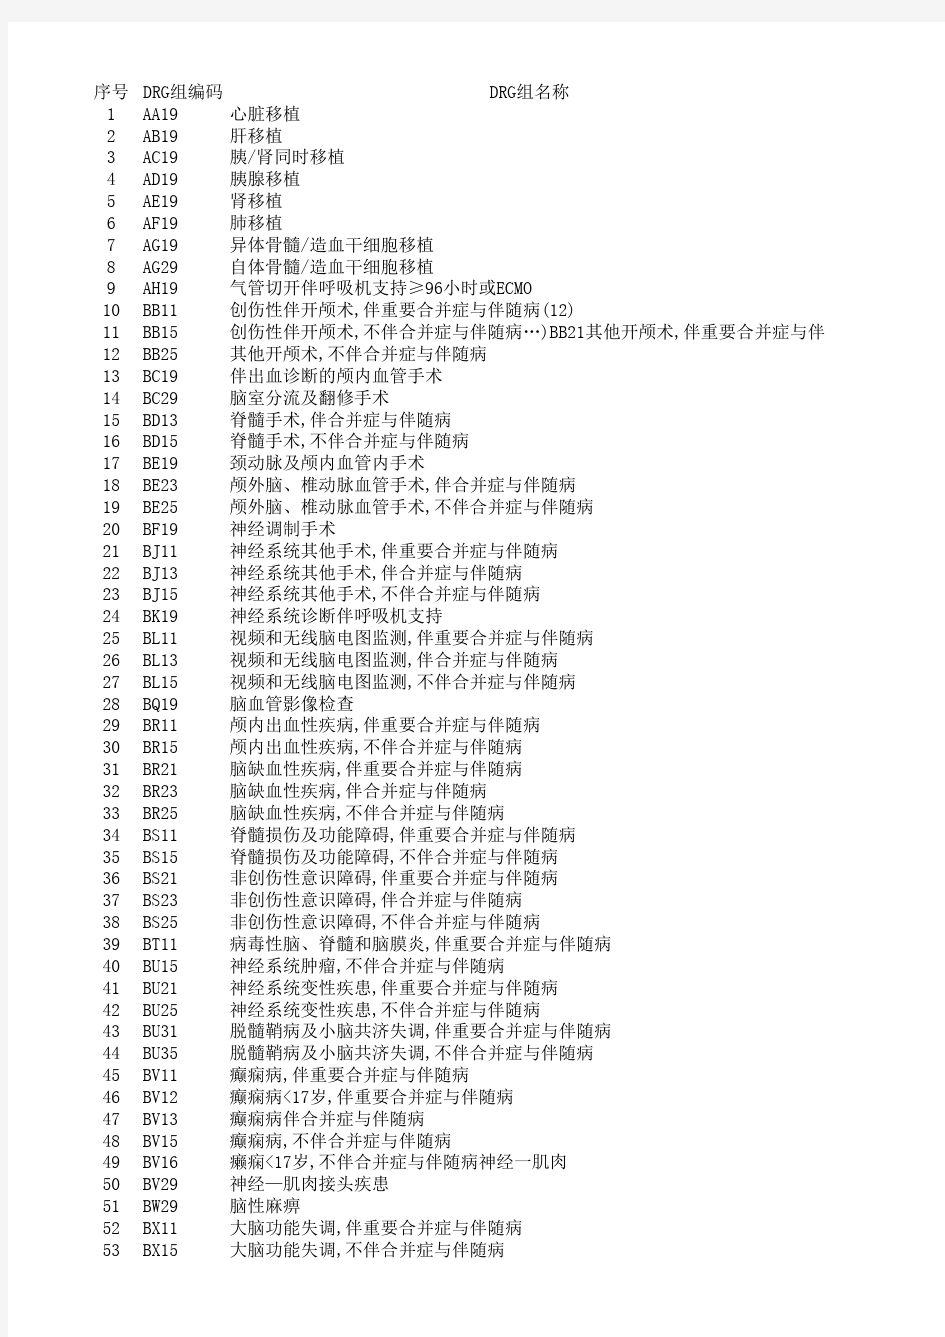 2014版CN-DRGs分组明细表